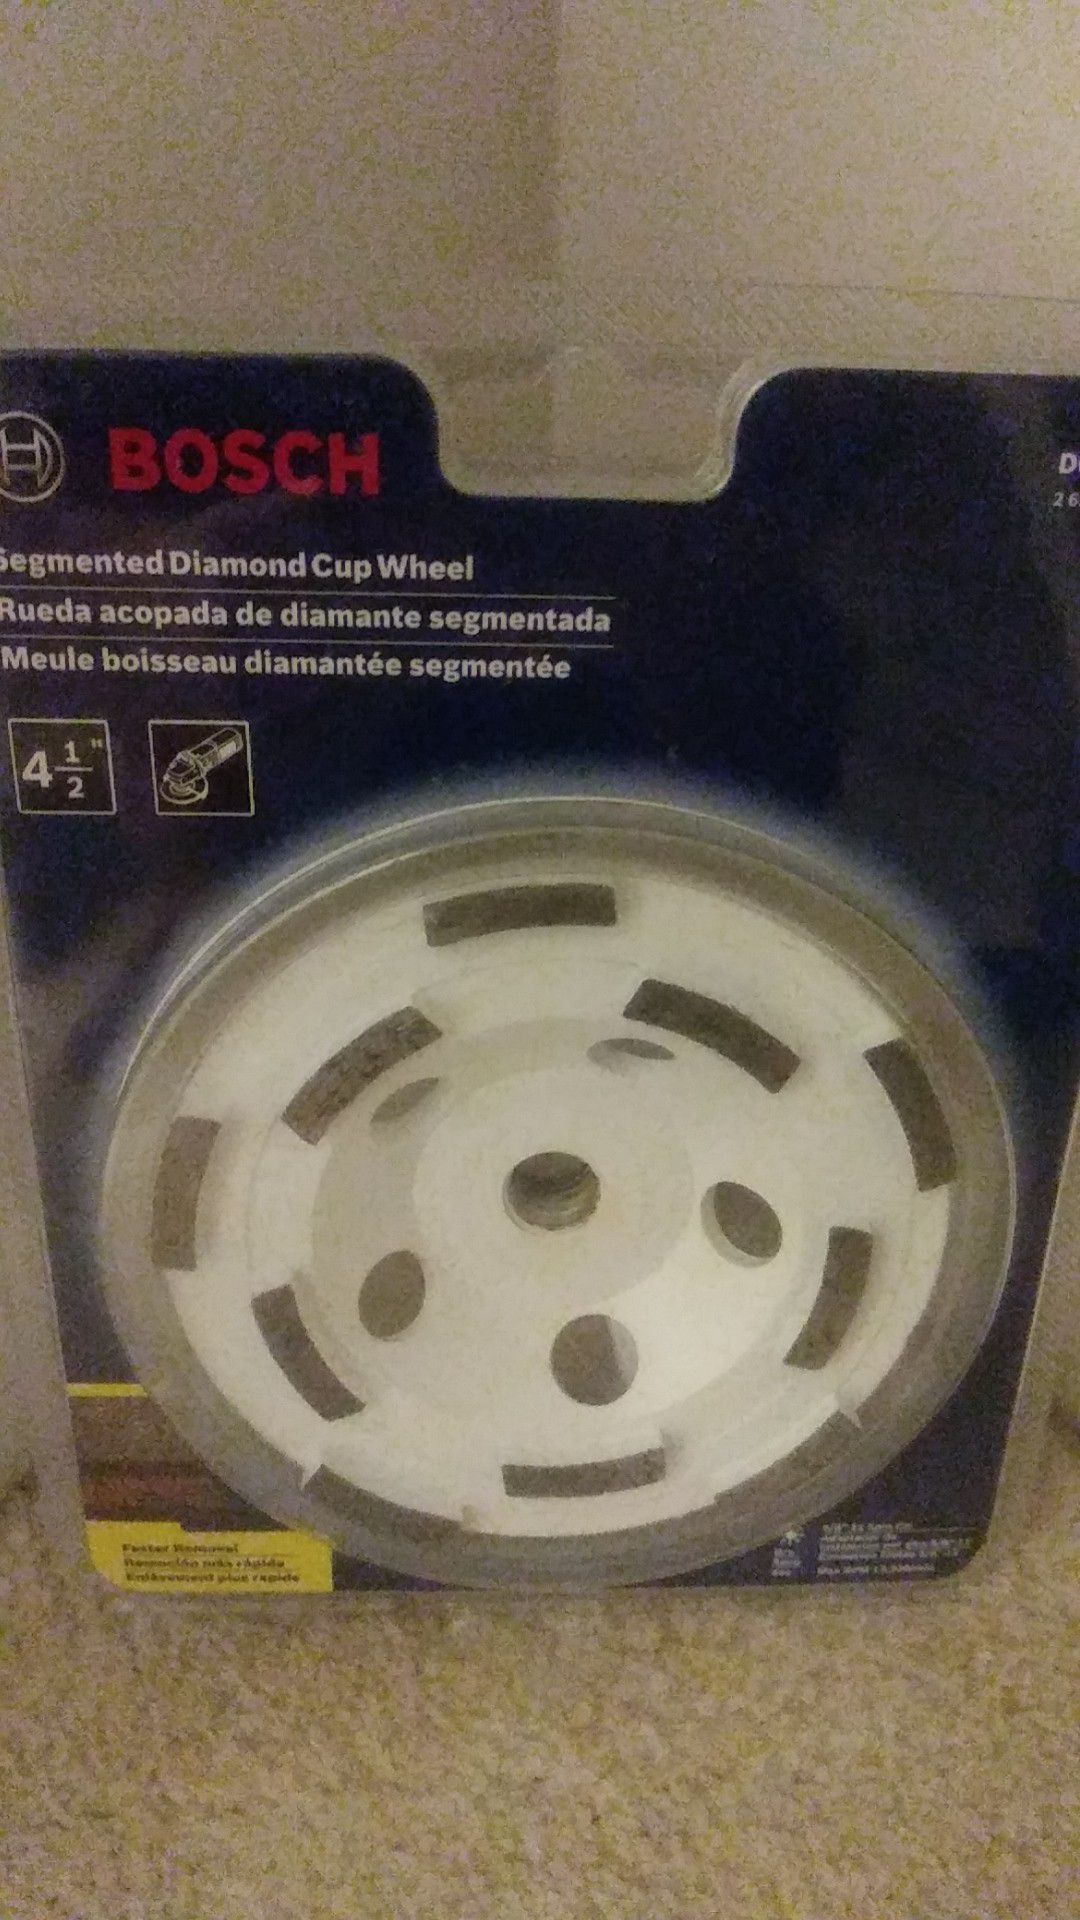 Bosch diamond cup wheel, New